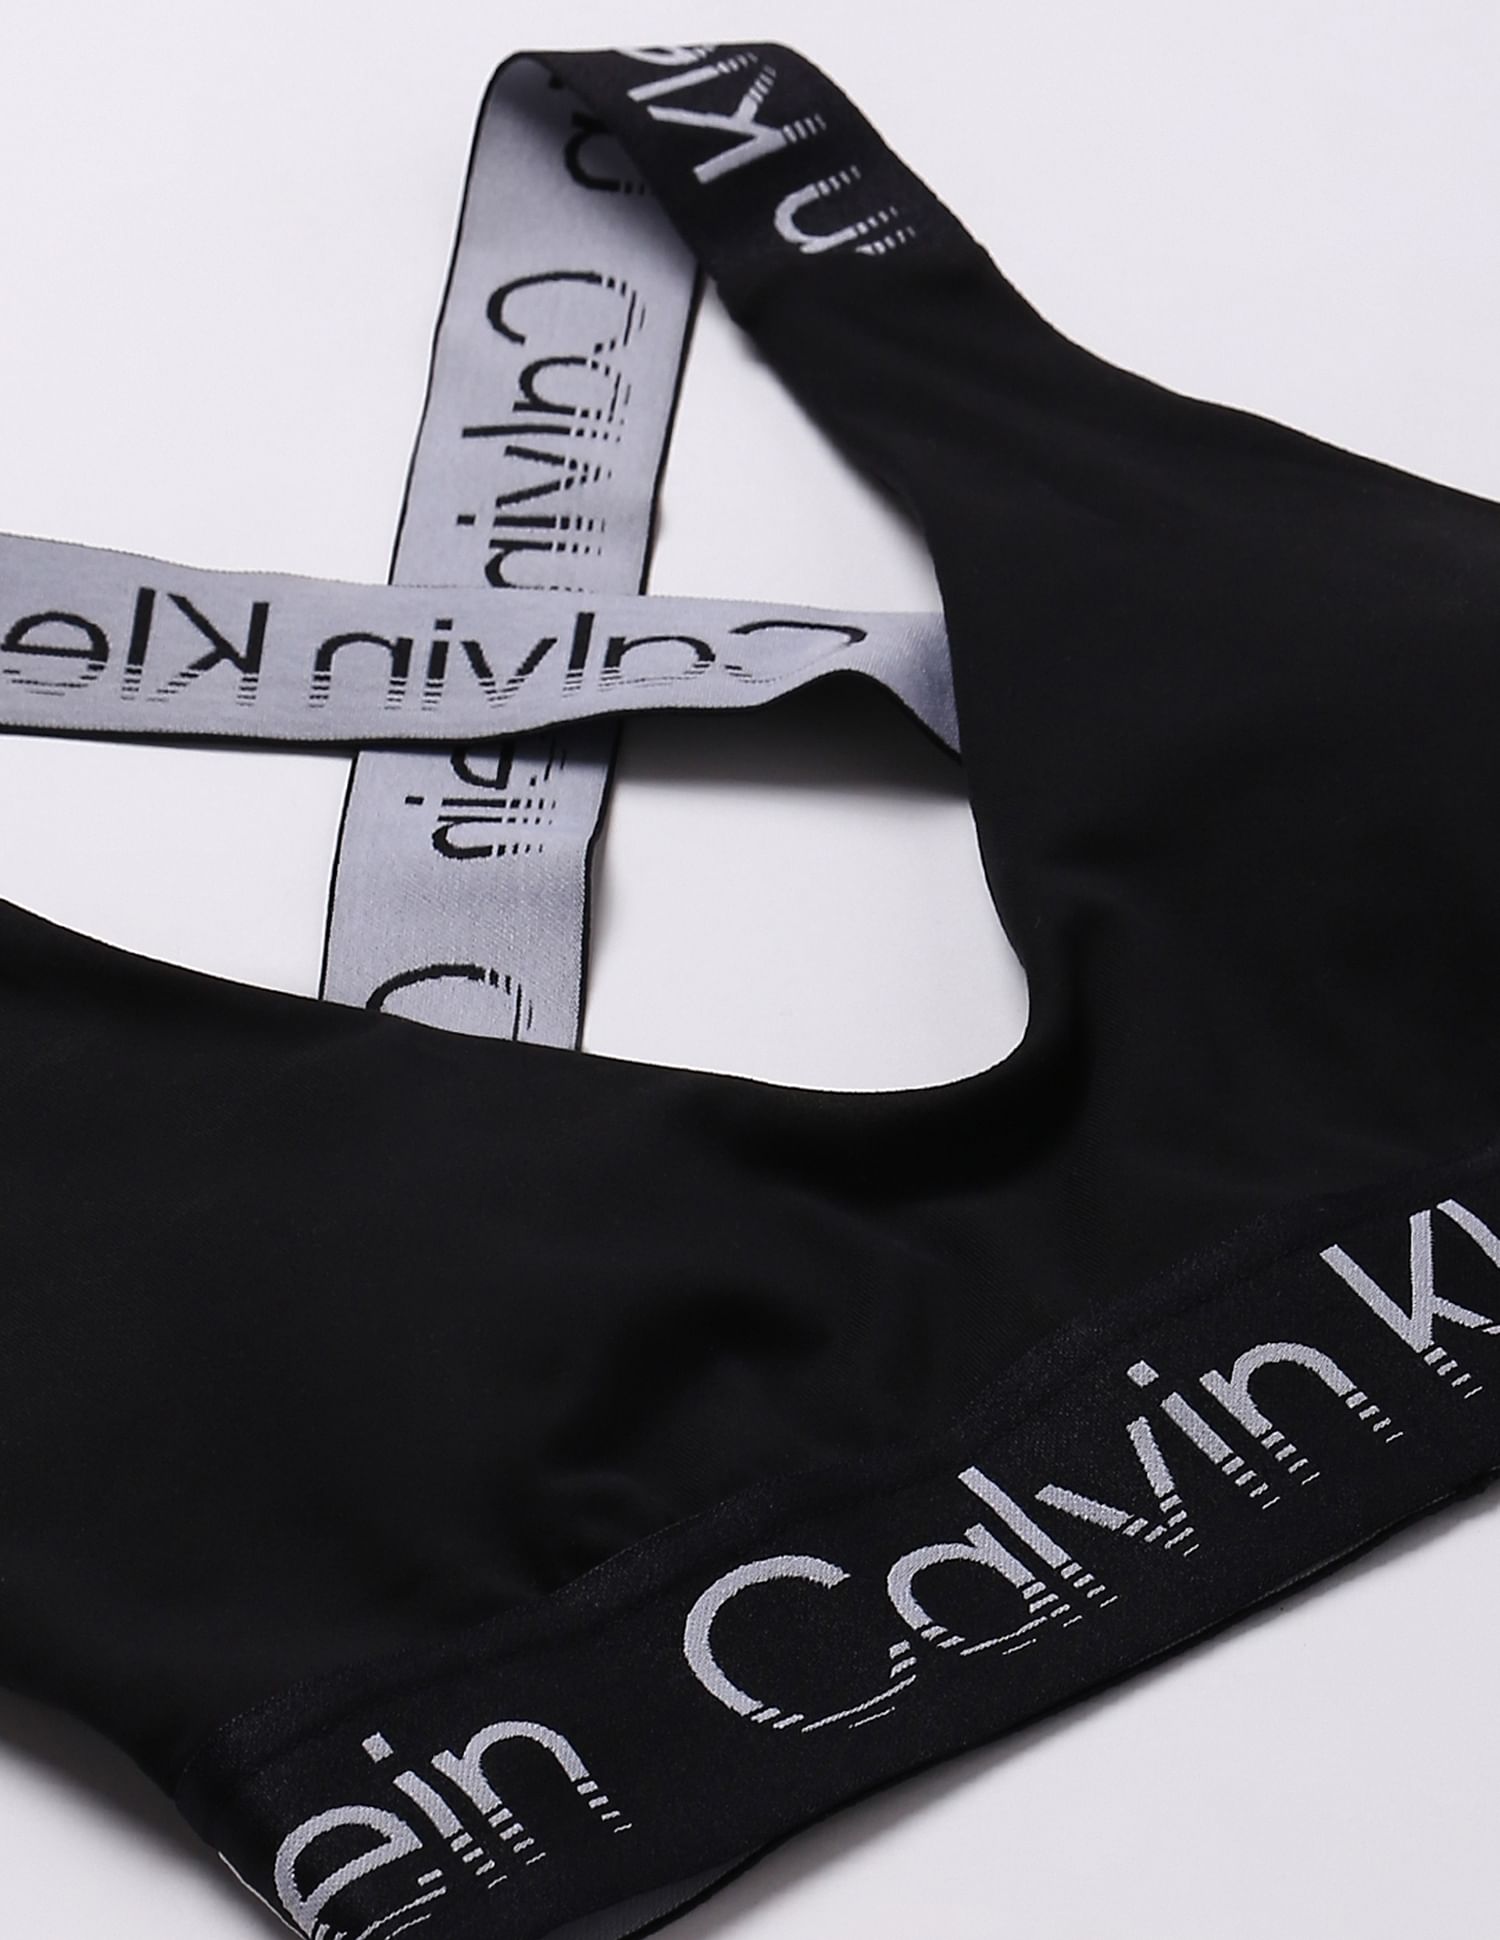 Buy Calvin Klein Underwear Scoop Neck Brand Print Sports Bra - NNNOW.com